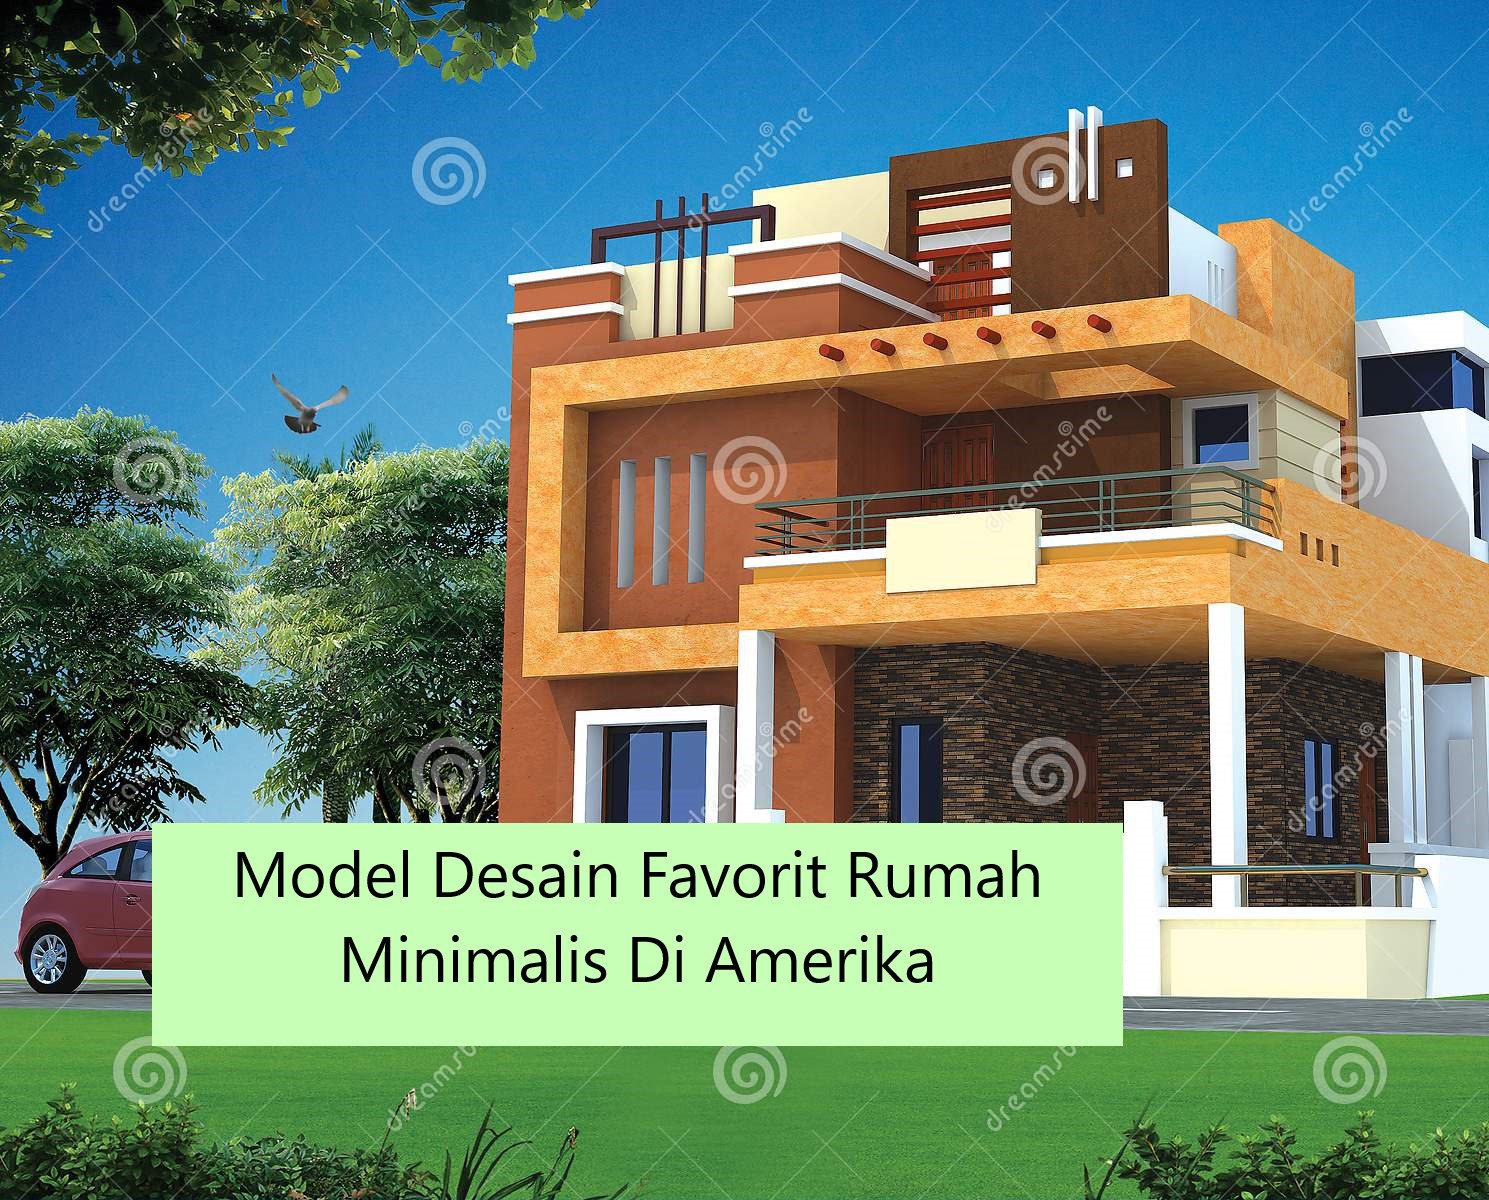 Model Desain Favorit Rumah Minimalis Di Amerika